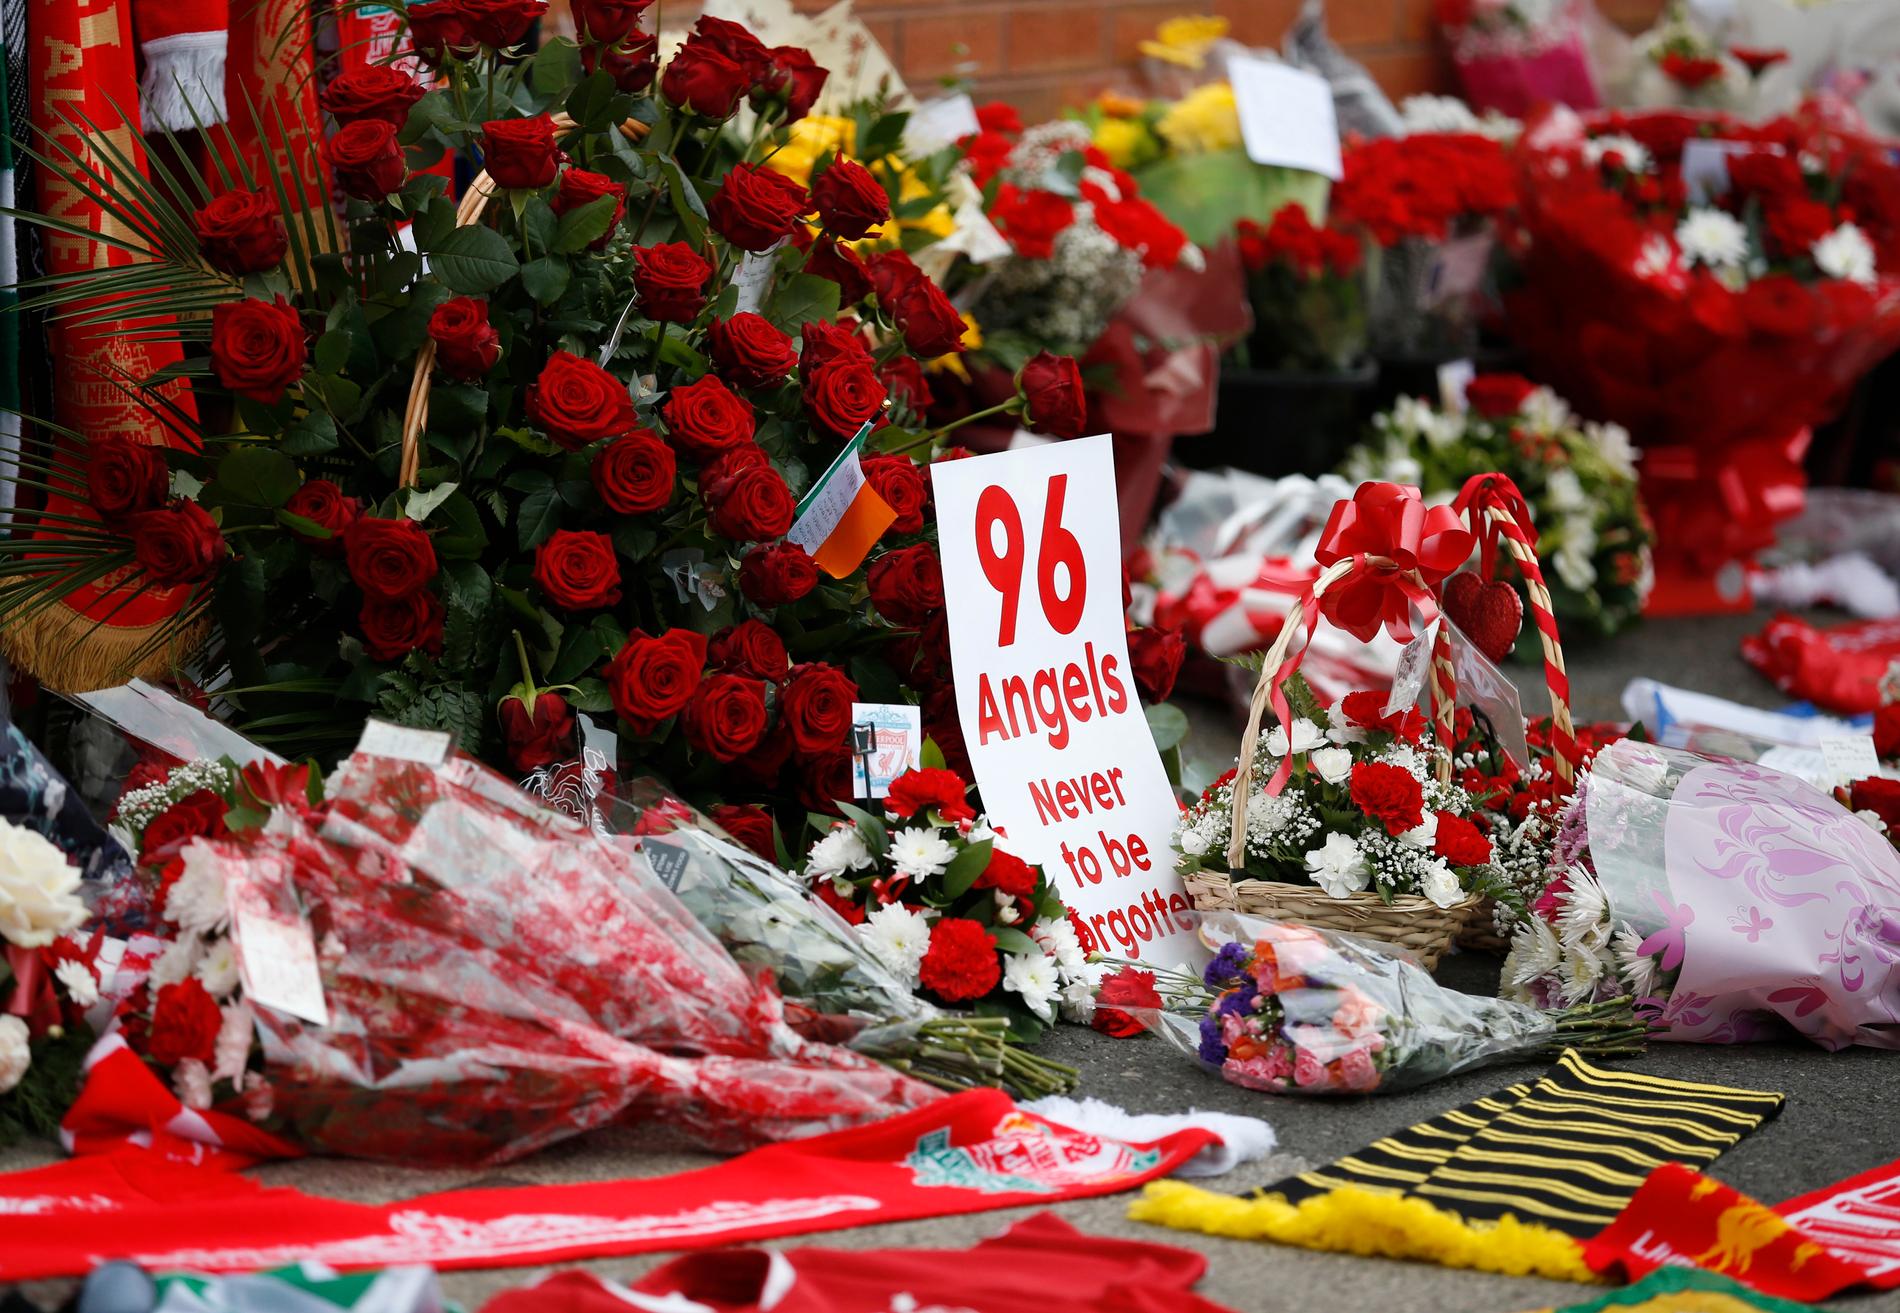 Lørdag er det 28 år siden 96 supportere mistet livet i en tragisk ulykke i Sheffield. For mange tilskuere slapp inn, og flere ble klemt ihjel.